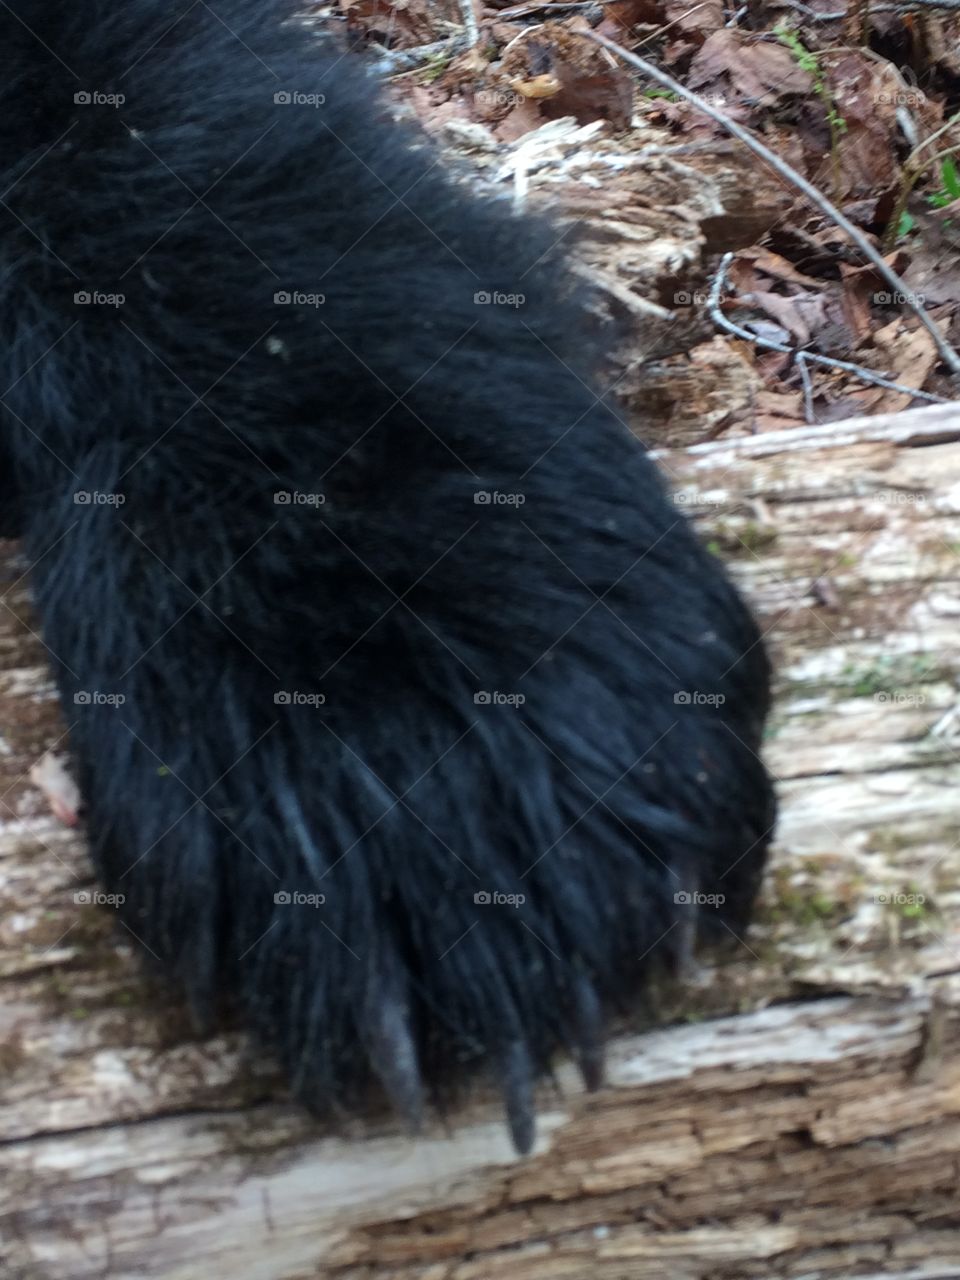 Black bear paw